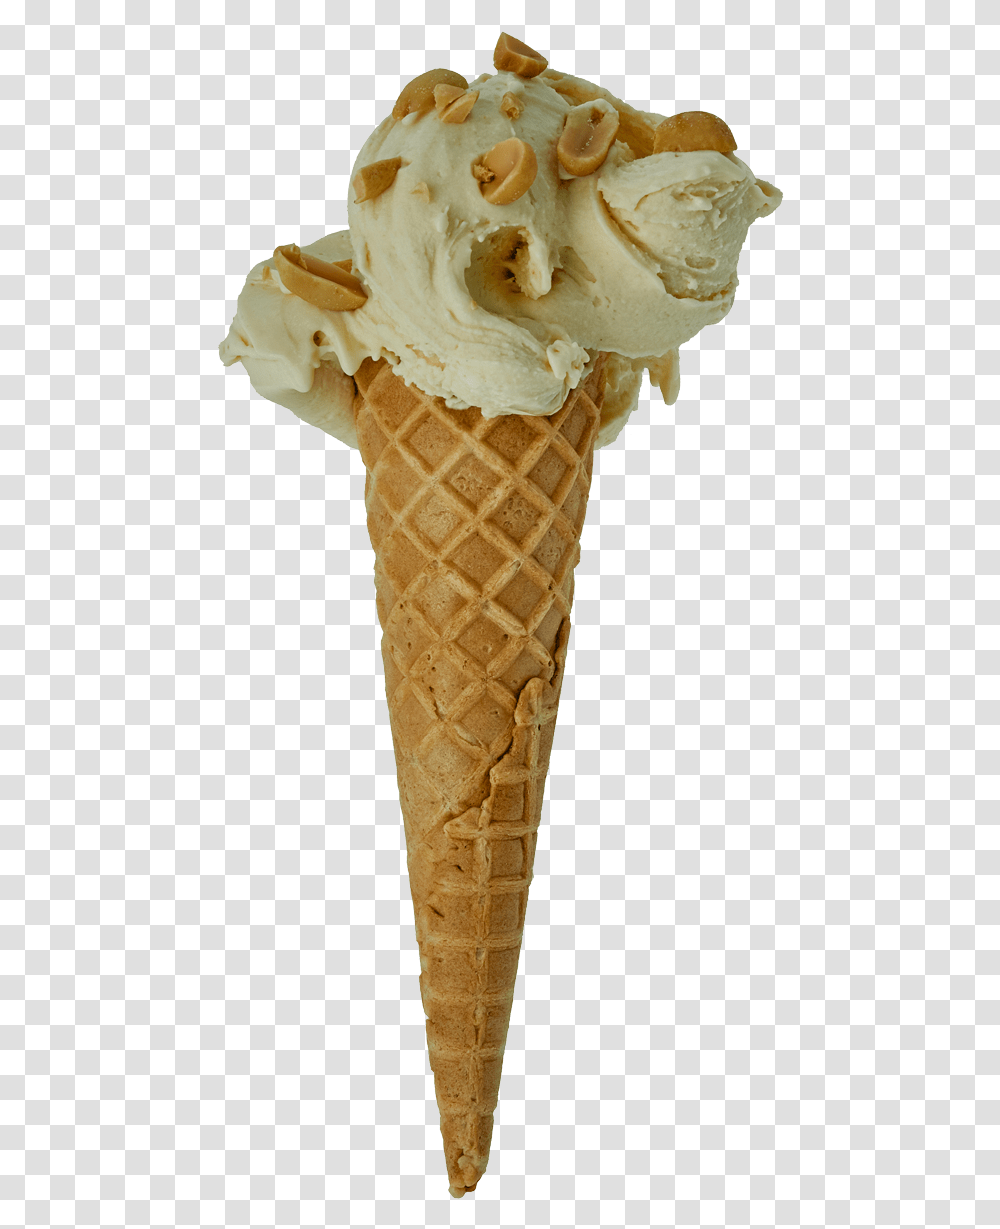 Ice Cream Cone Ice Cream Cone, Dessert, Food, Creme, Icing Transparent Png